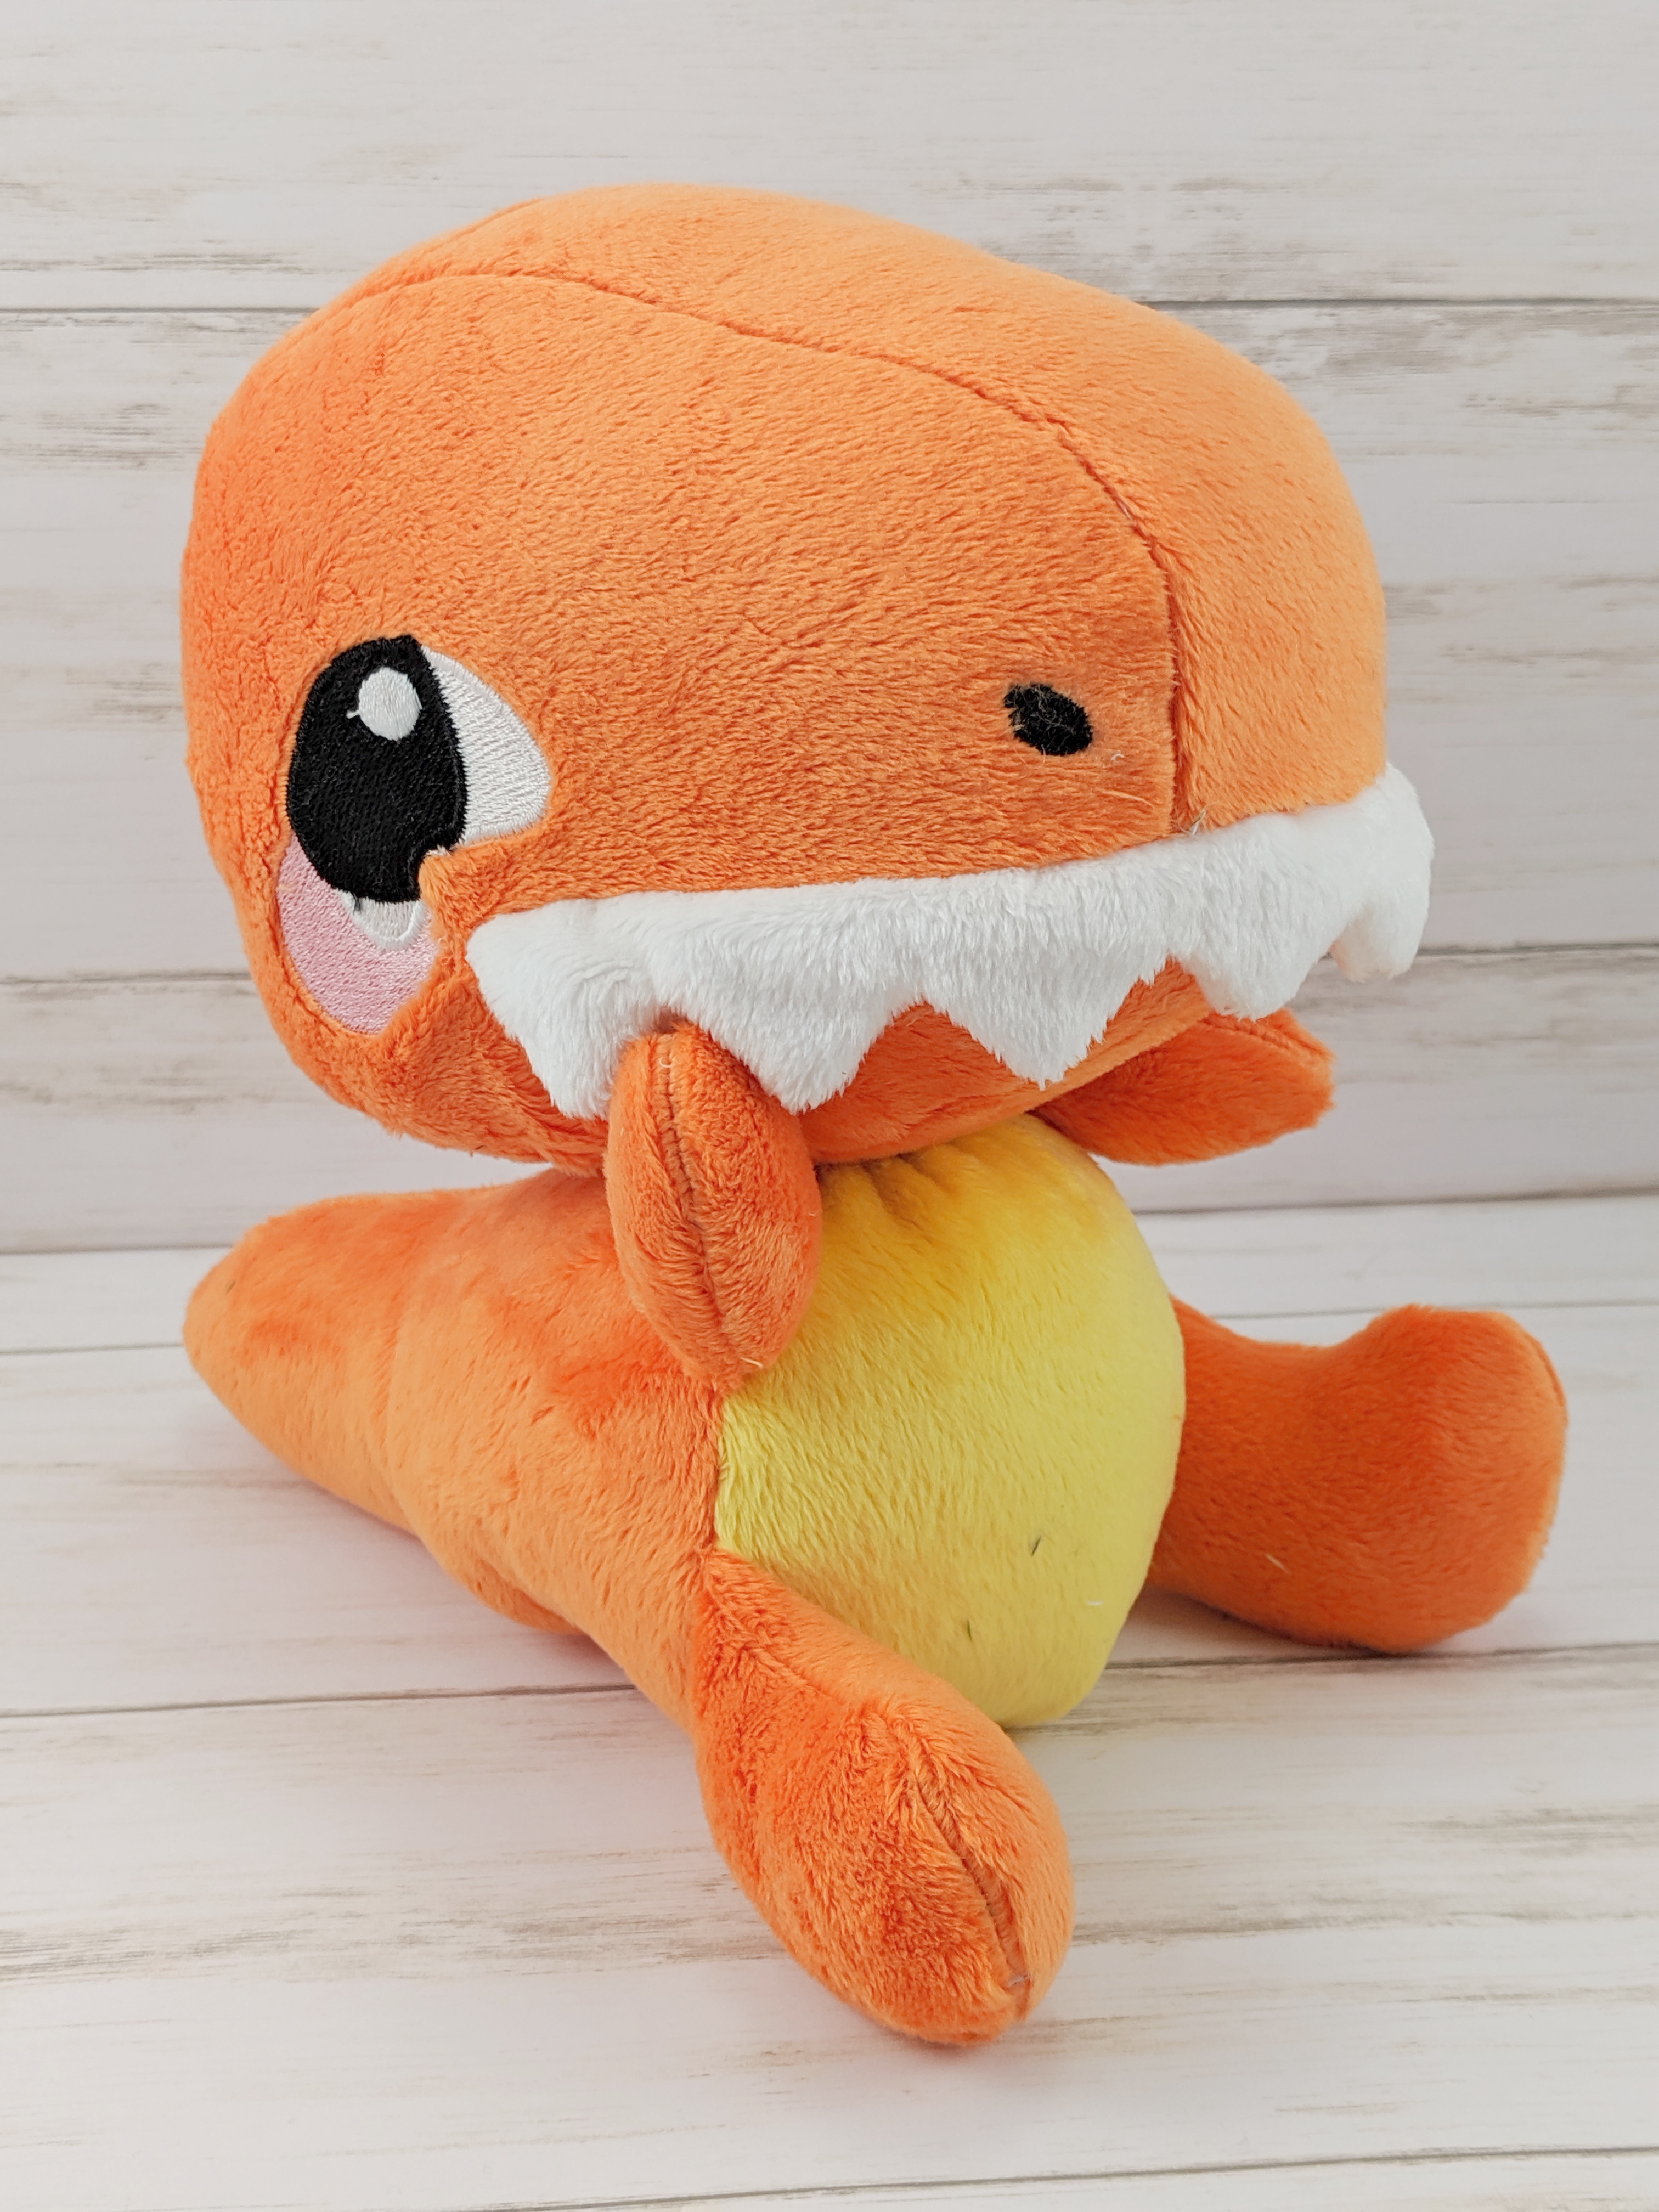 orange stuffed animal